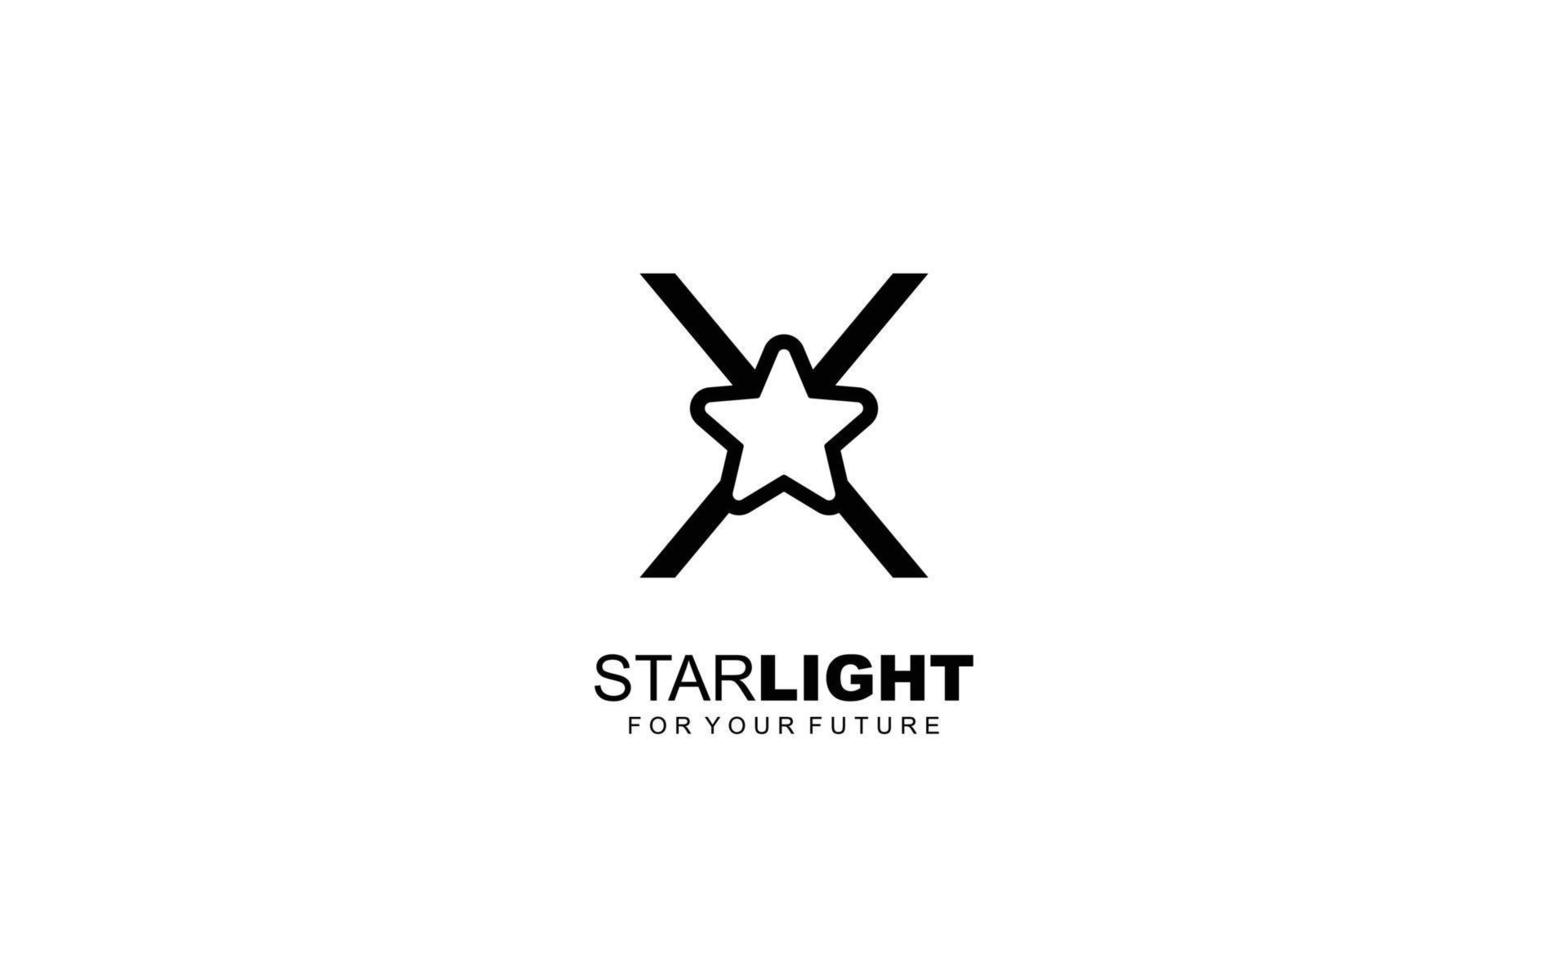 X logo ster voor branding bedrijf. brief sjabloon vector illustratie voor uw merk.